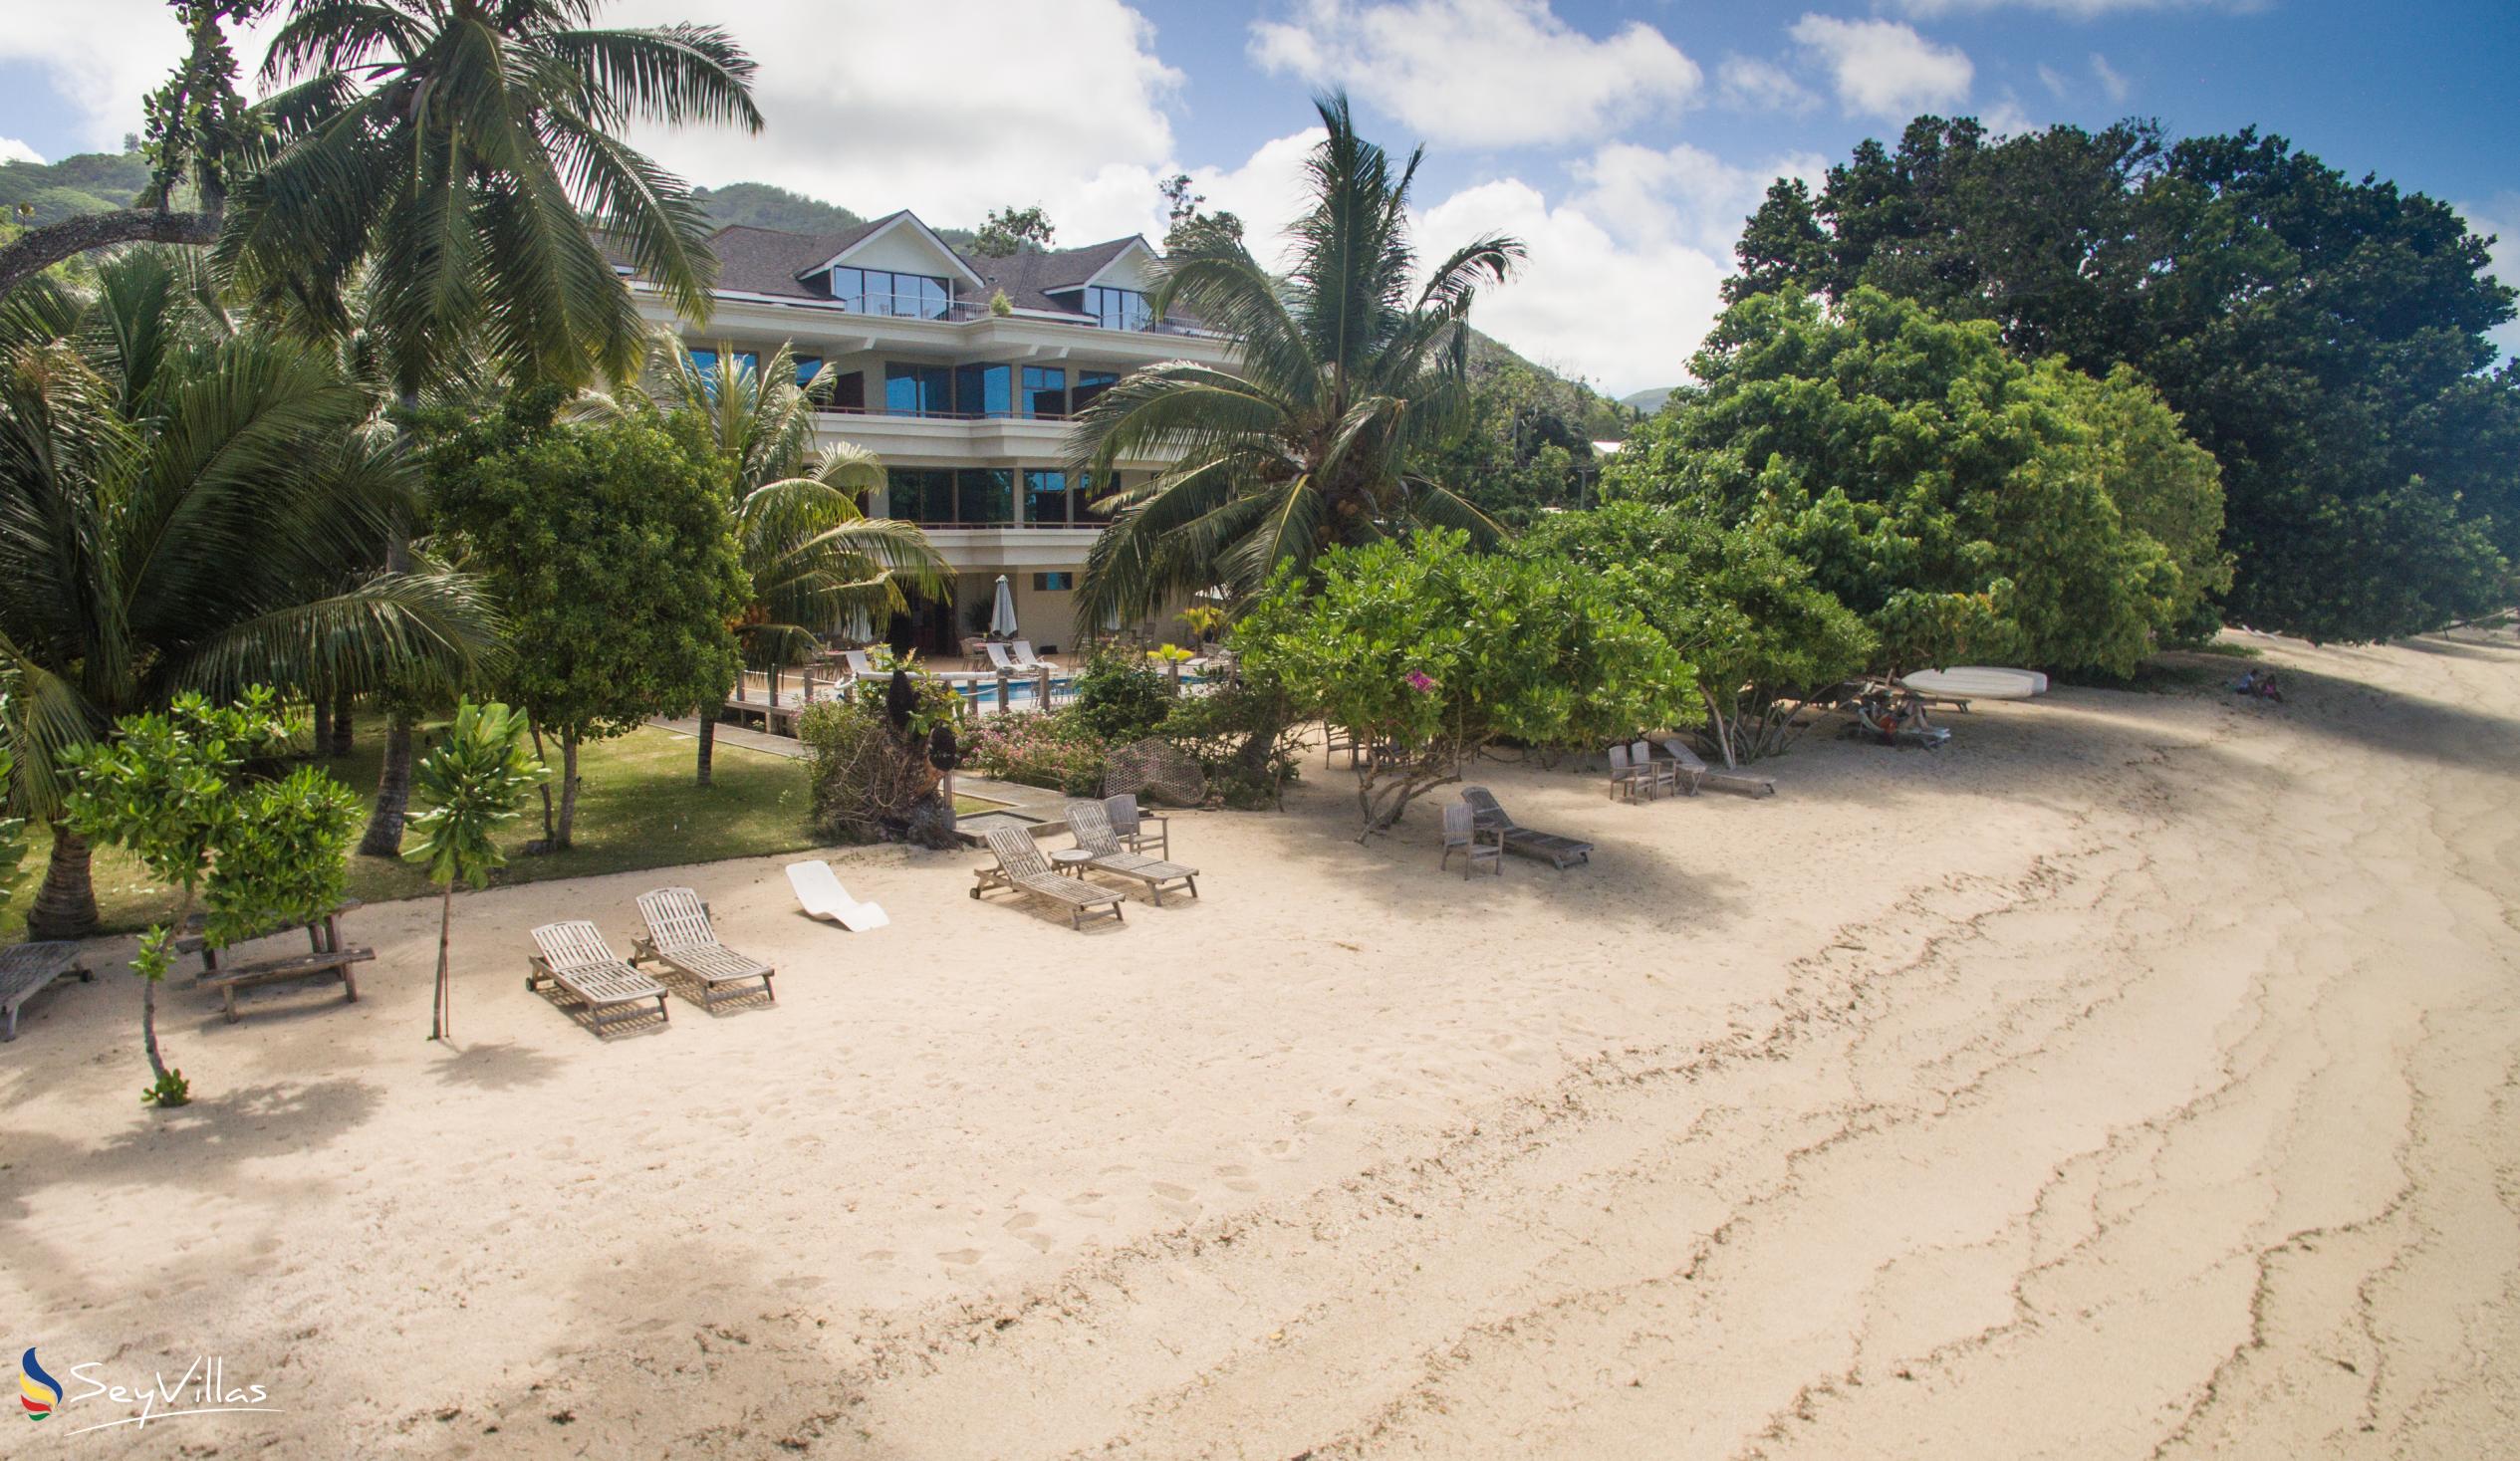 Photo 3: Crown Beach Hotel - Outdoor area - Mahé (Seychelles)